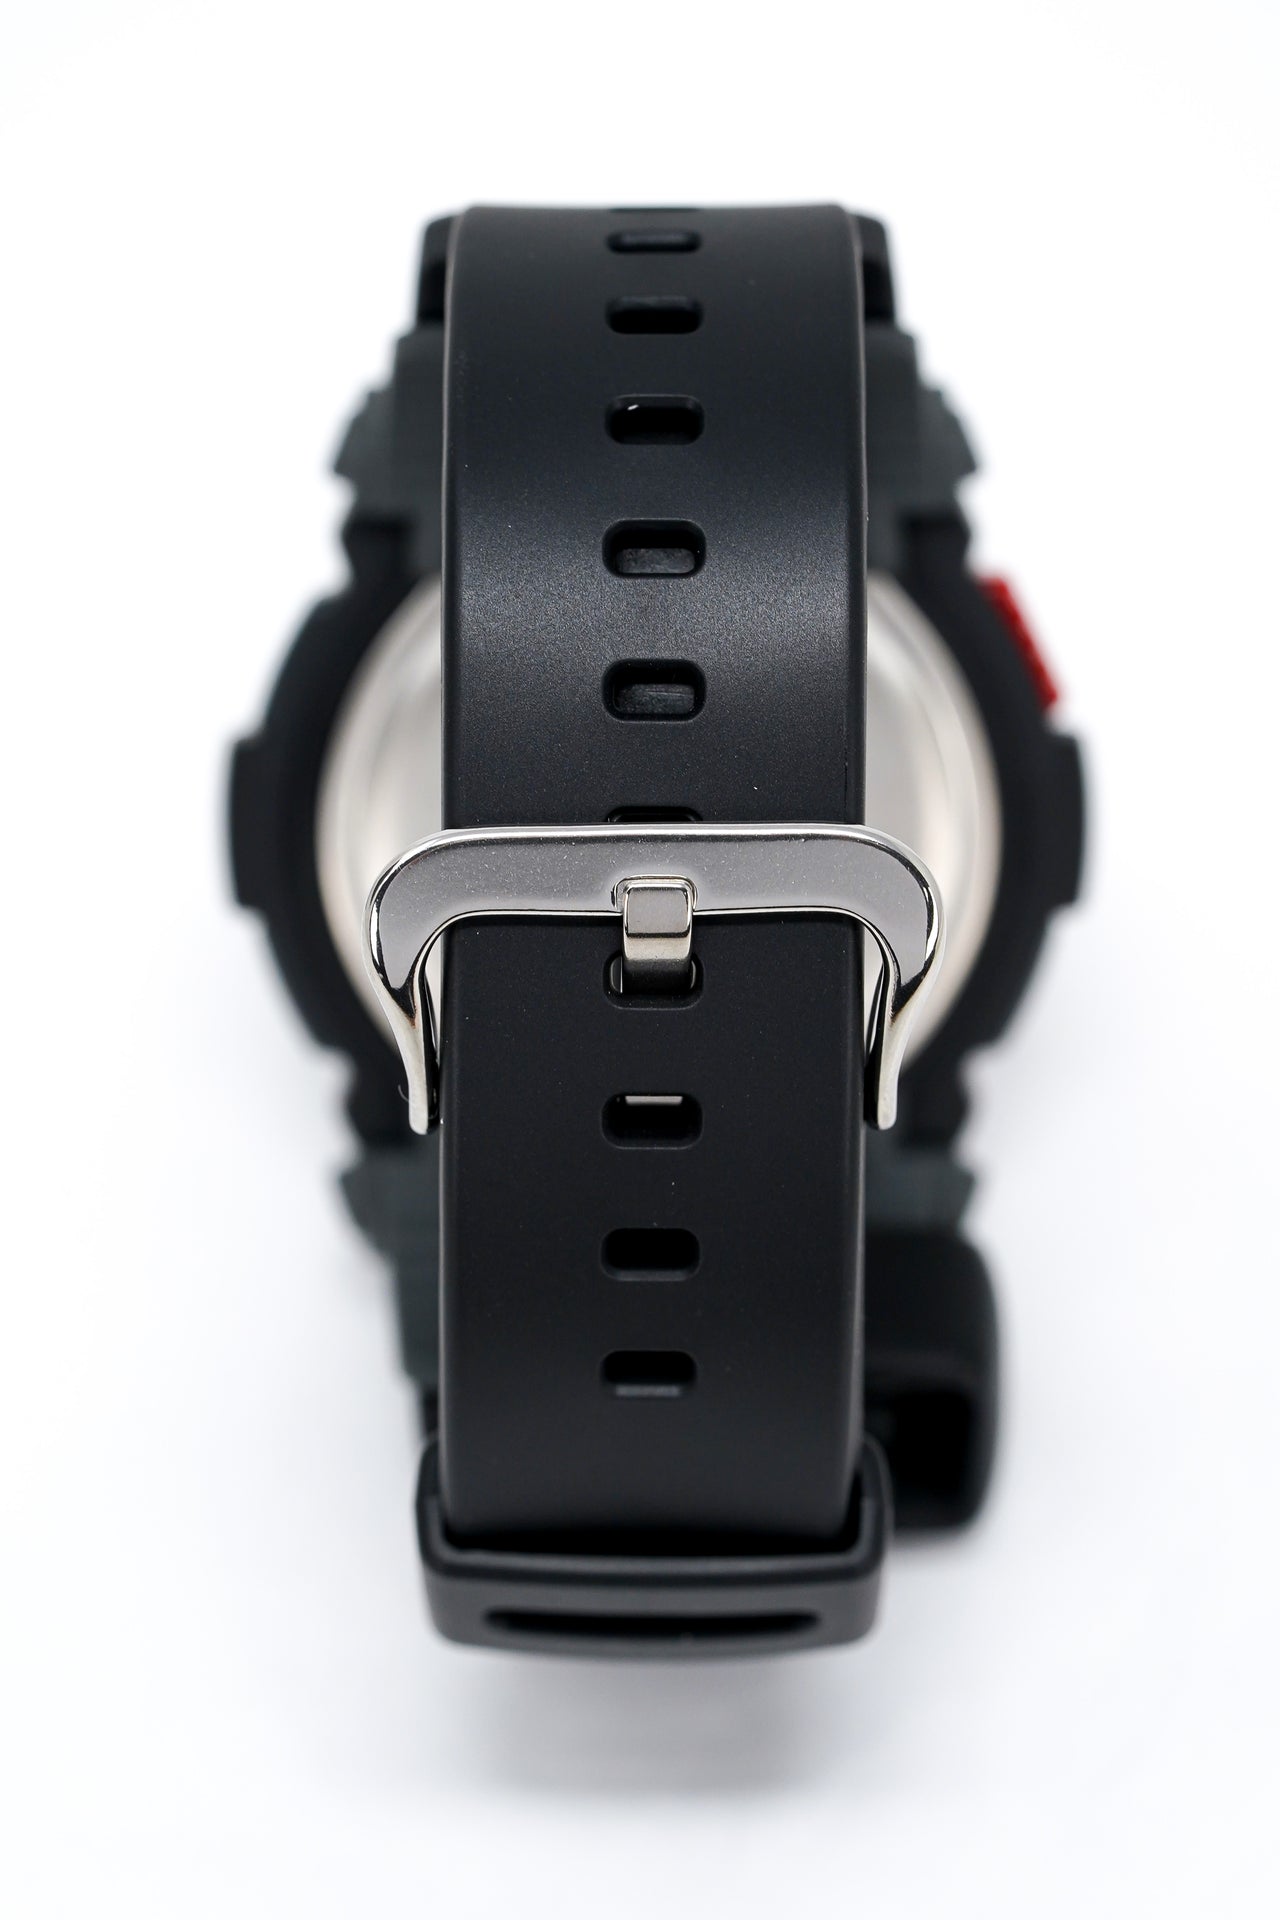 Casio G-Shock Watch Men's G-Rescue Black Red G-7900-1DR